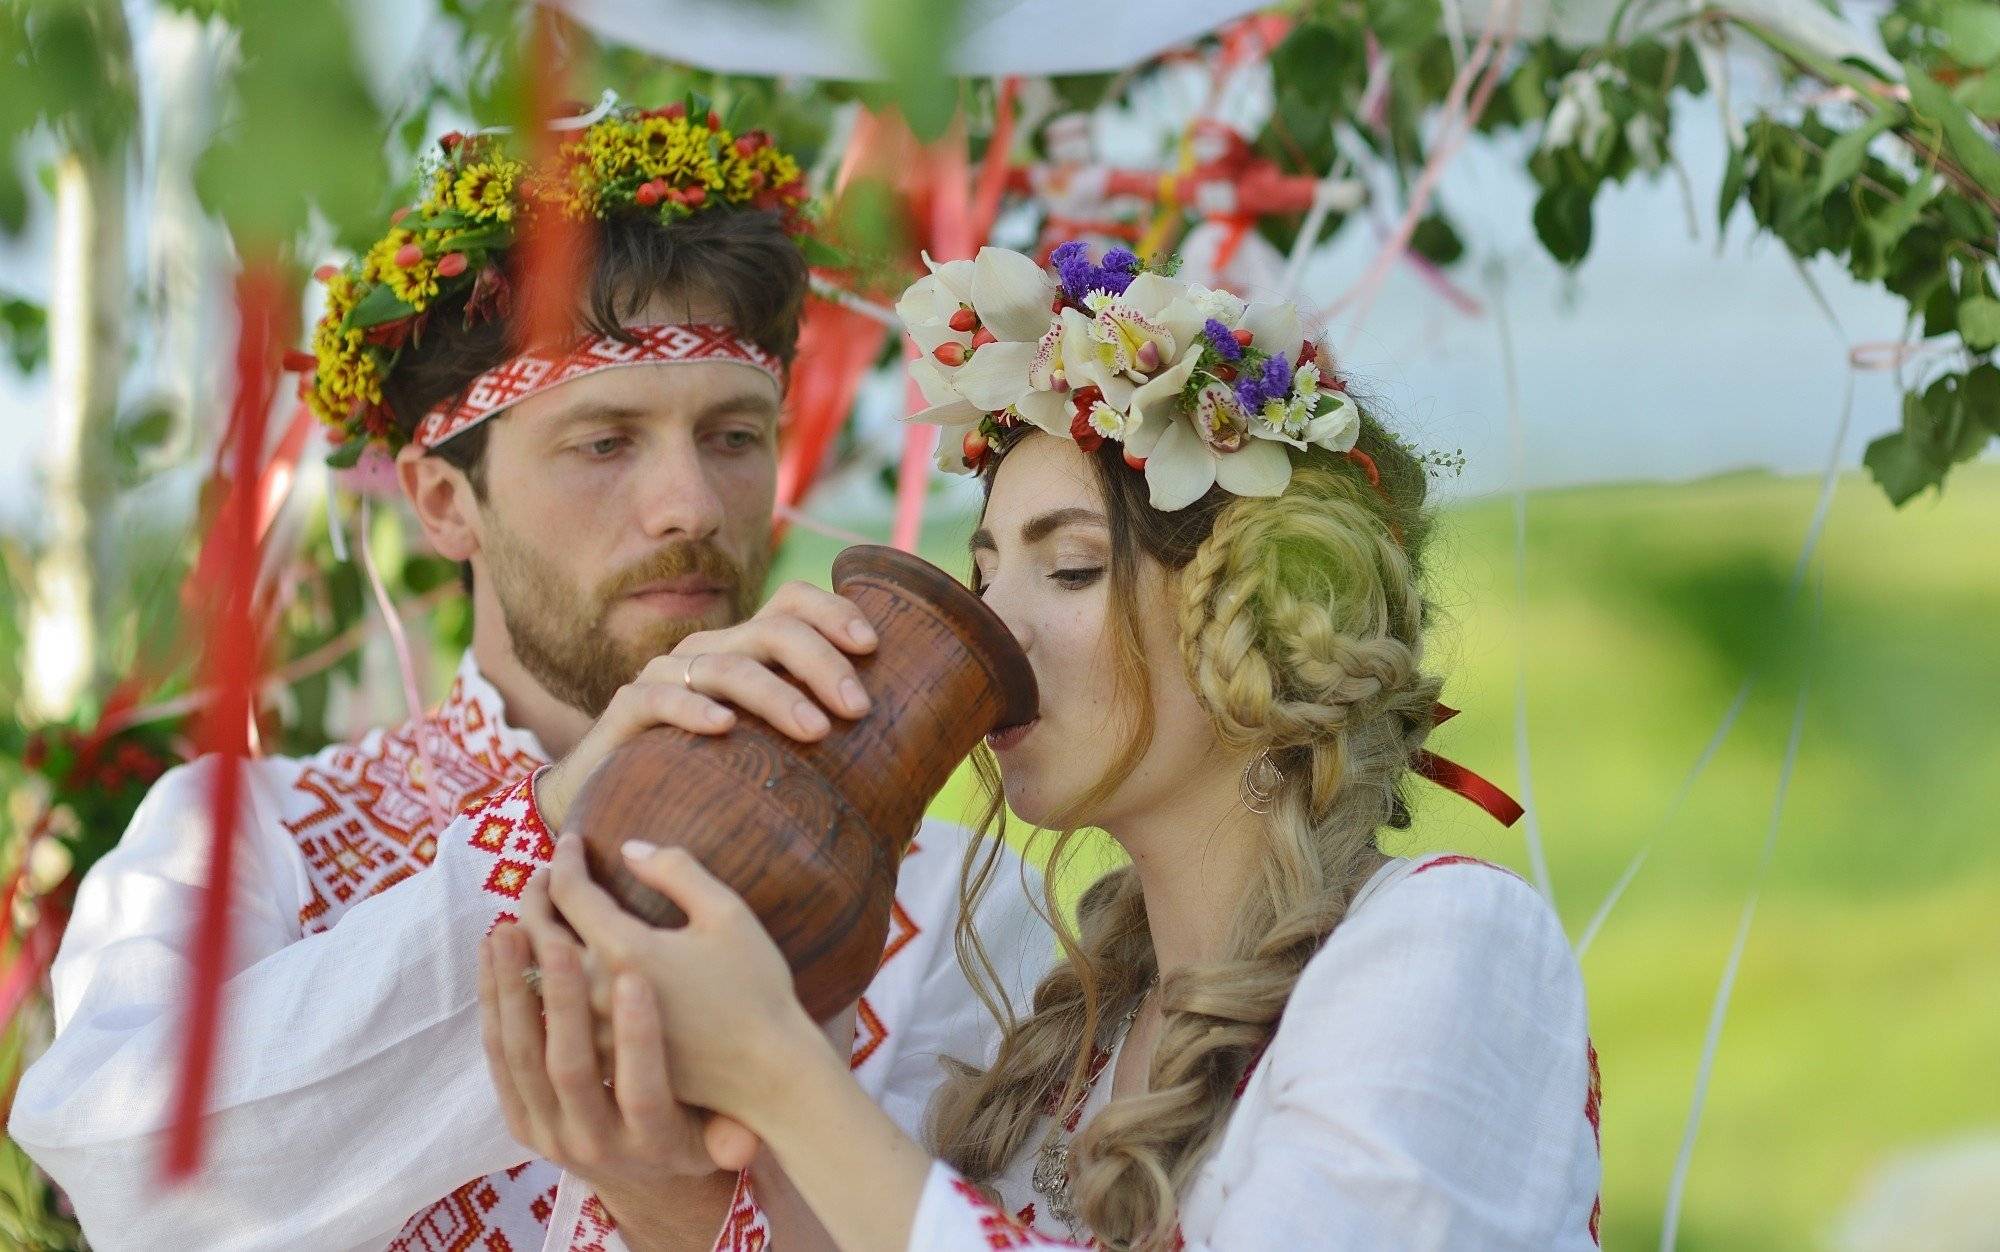 Свадьба в русском стиле: фото и советы